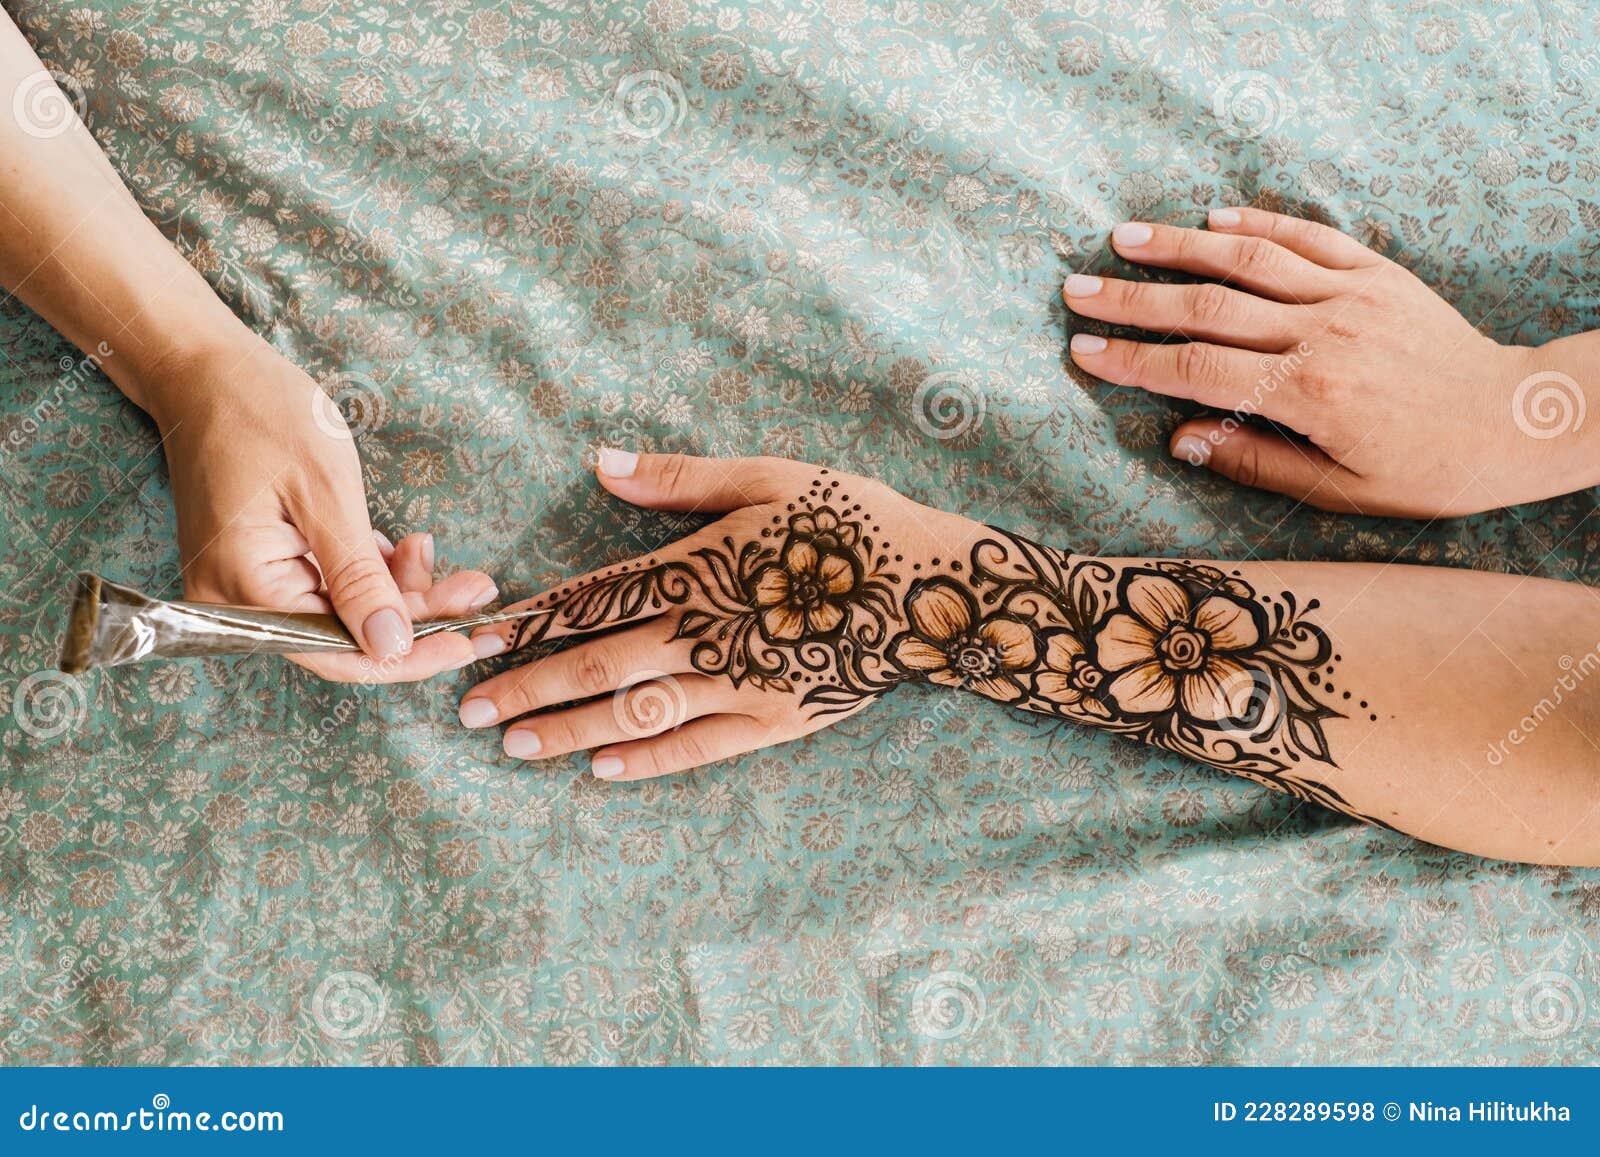 Flower wrist henna  Wrist henna Henna designs Henna